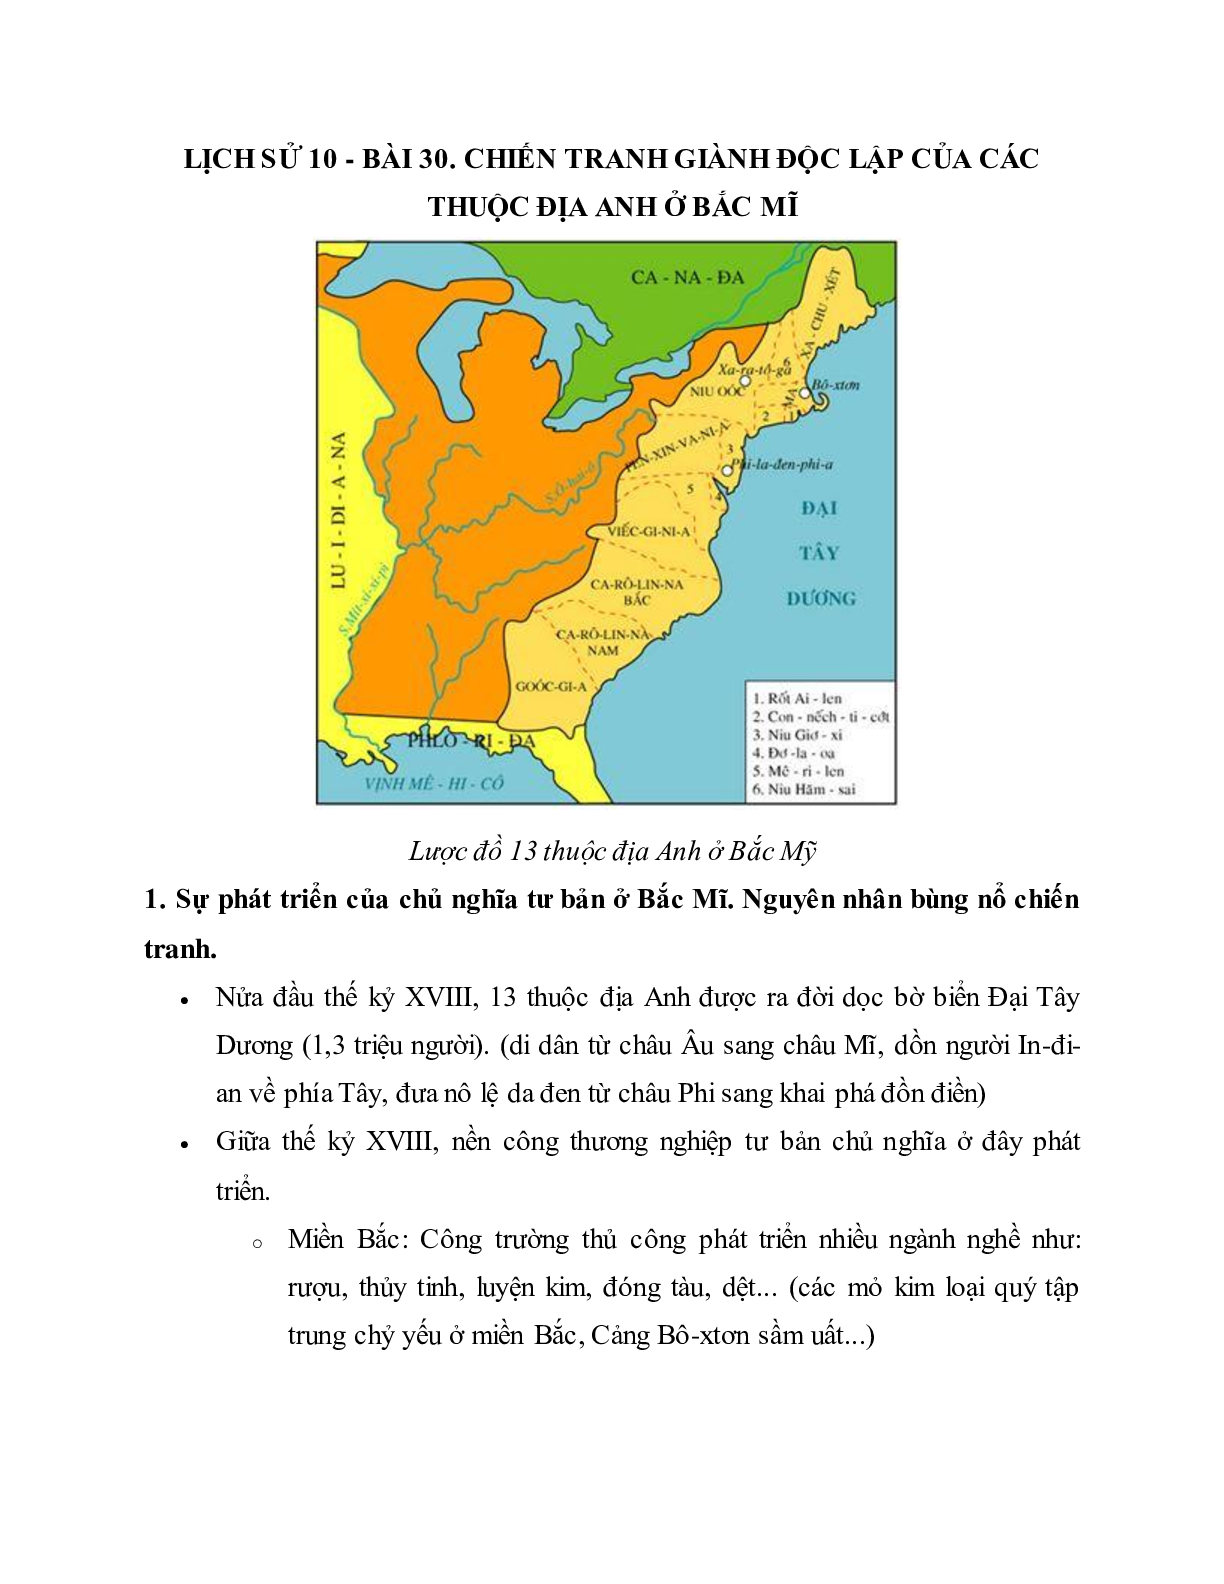 Lý thuyết Lịch sử 10: Bài 30: Chiến tranh giành độc lập của các thuộc địa Anh ở Bắc Mĩ mới nhất (trang 1)